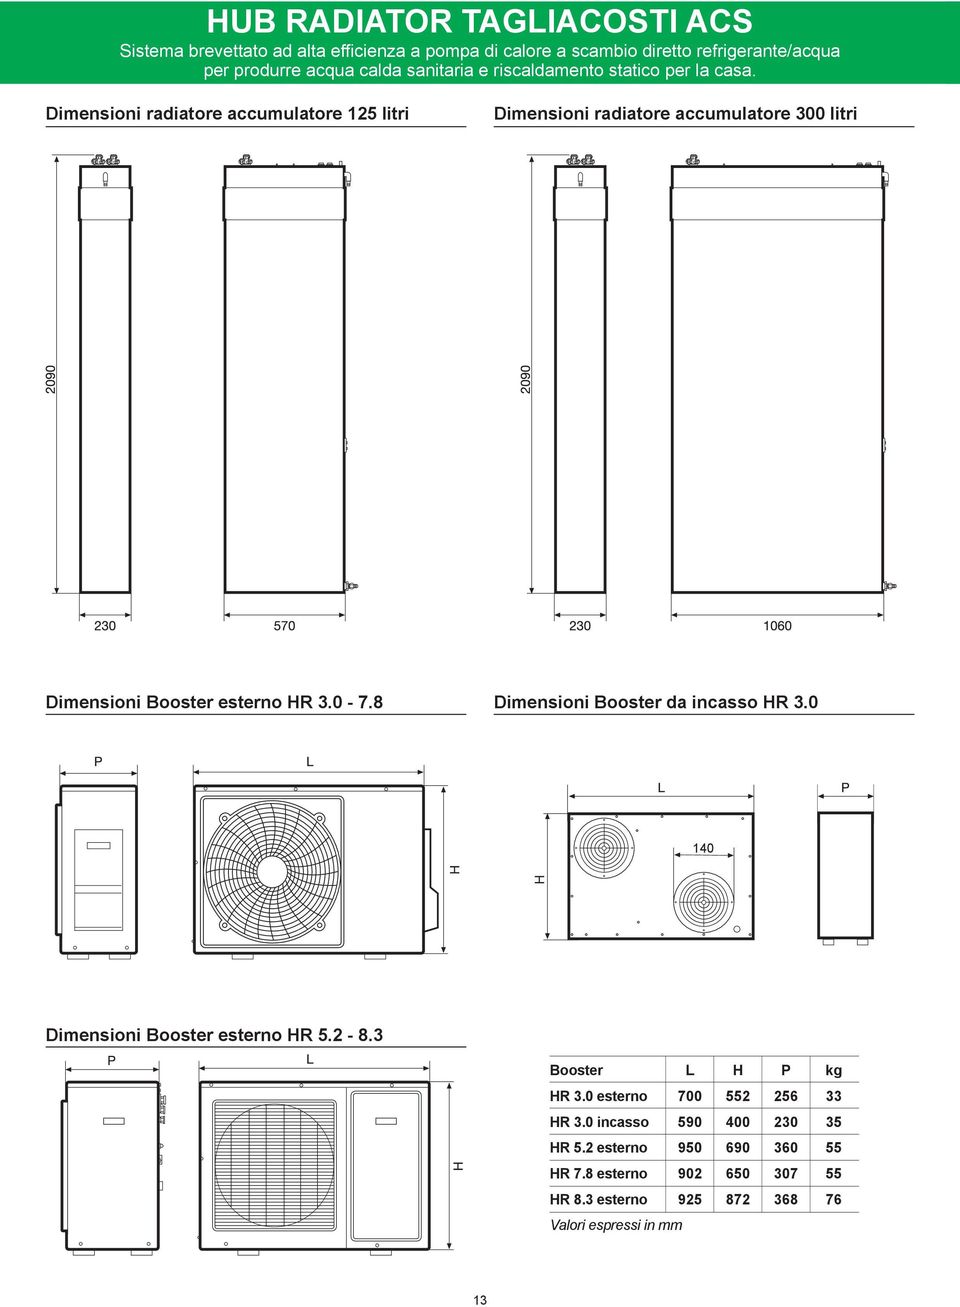 Dimensioni radiatore accumuatore 125 itri Dimensioni radiatore accumuatore 300 itri Dimensioni Booster esterno HR 3.0 7.